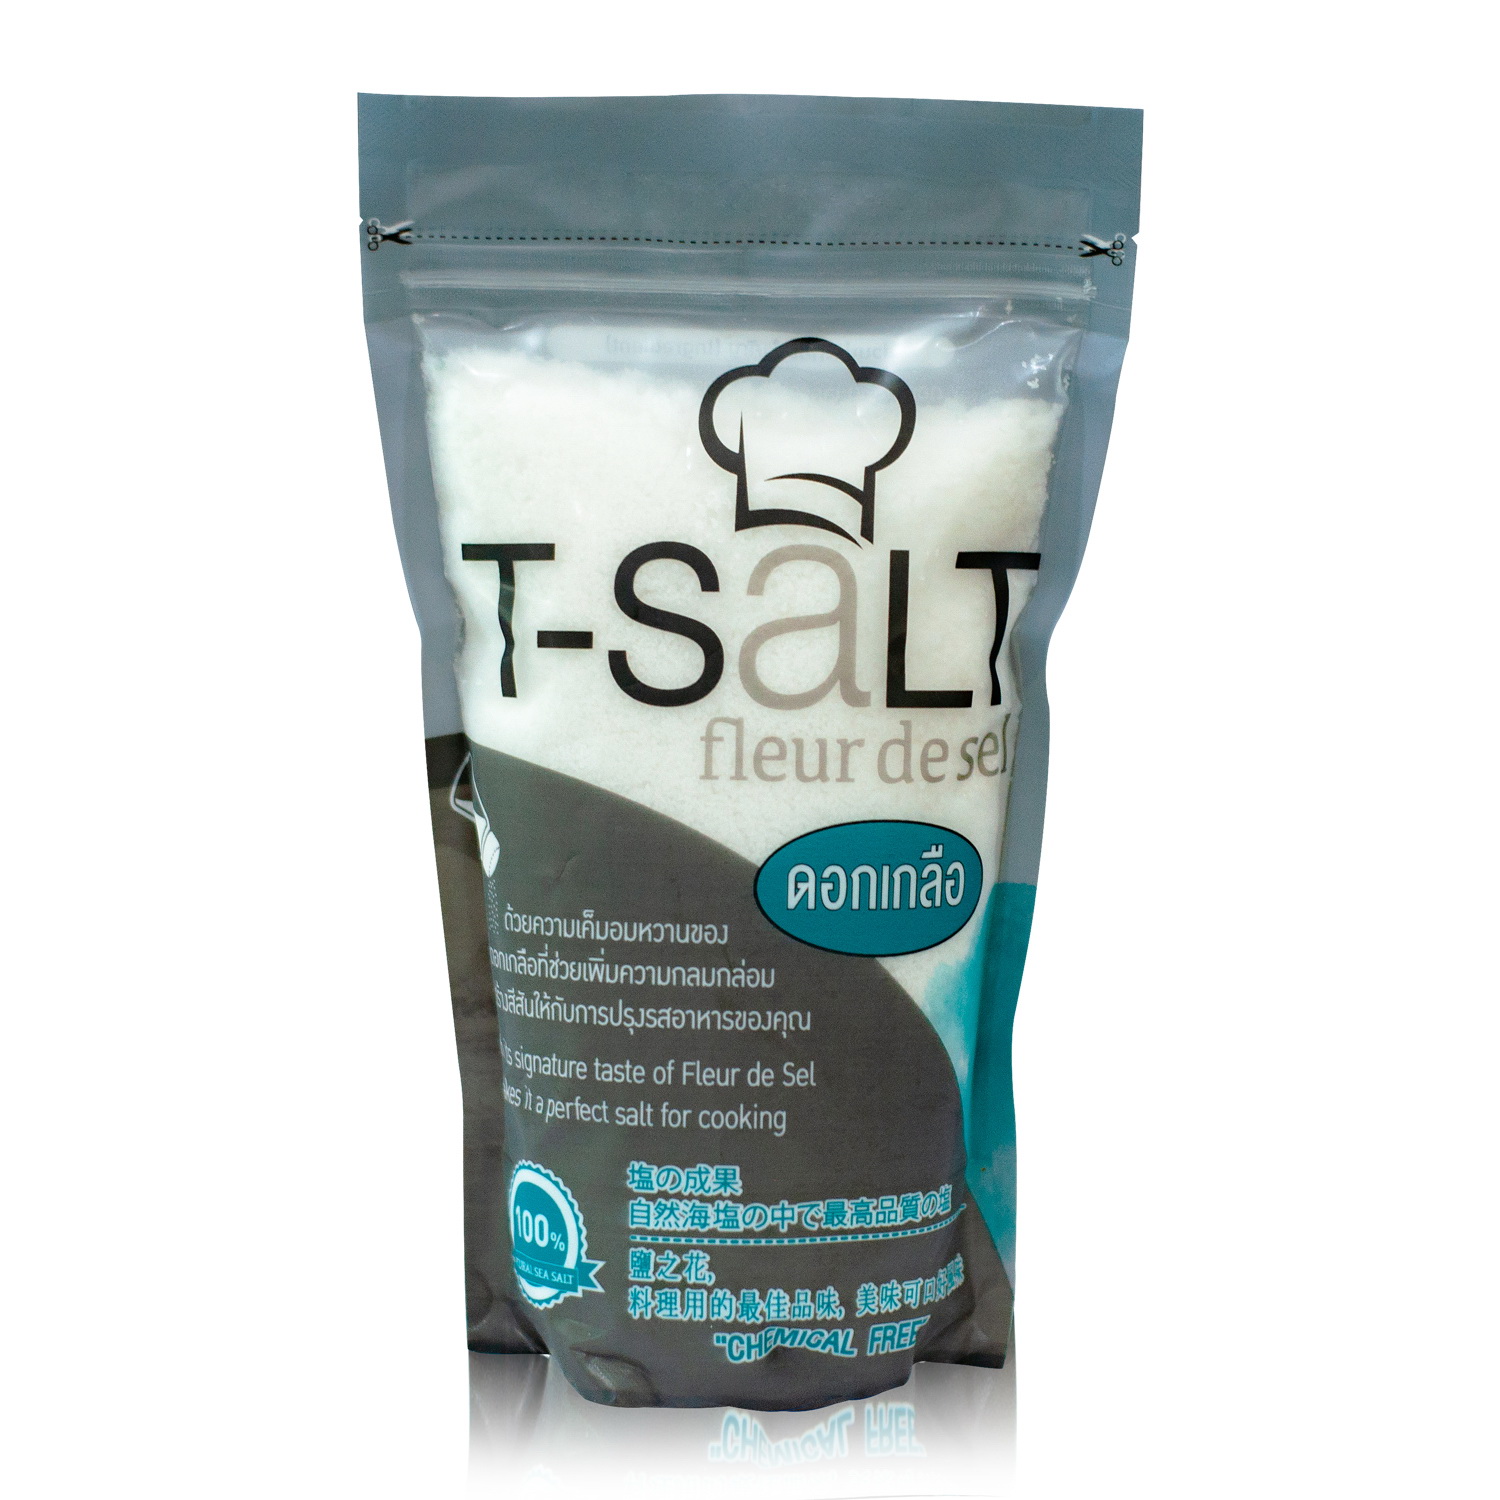 ดอกเกลือทะเล T-Salt (100% Natural Fleur de sel ) ไม่เติมสารไอโอดีน ปราศจากสารเคมี (จัดนำหน่ายโดยบริษัทเจ้าของแบรนด์)